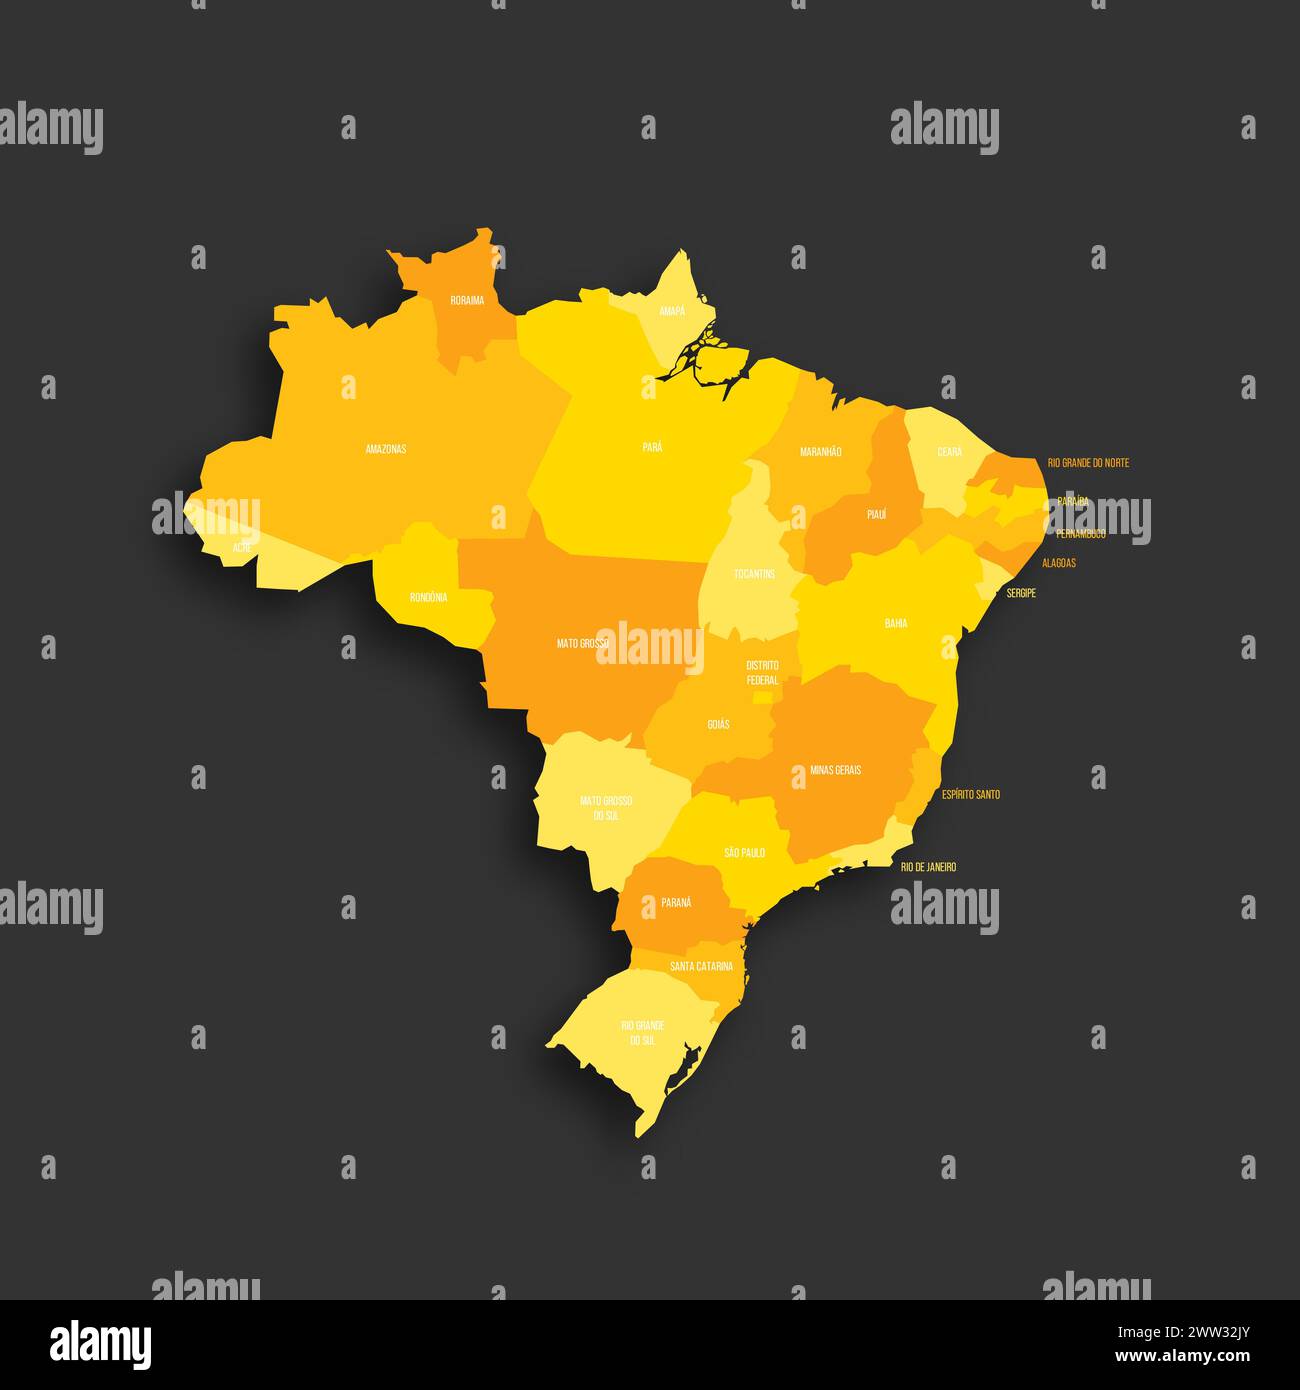 Brasilien politische Karte der Verwaltungsbereiche - Föderative Einheiten Brasiliens. Flache Vektorkarte mit gelbem Schatten mit Namensbeschriftungen und fallendem Schatten isoliert auf dunkelgrauem Hintergrund. Stock Vektor